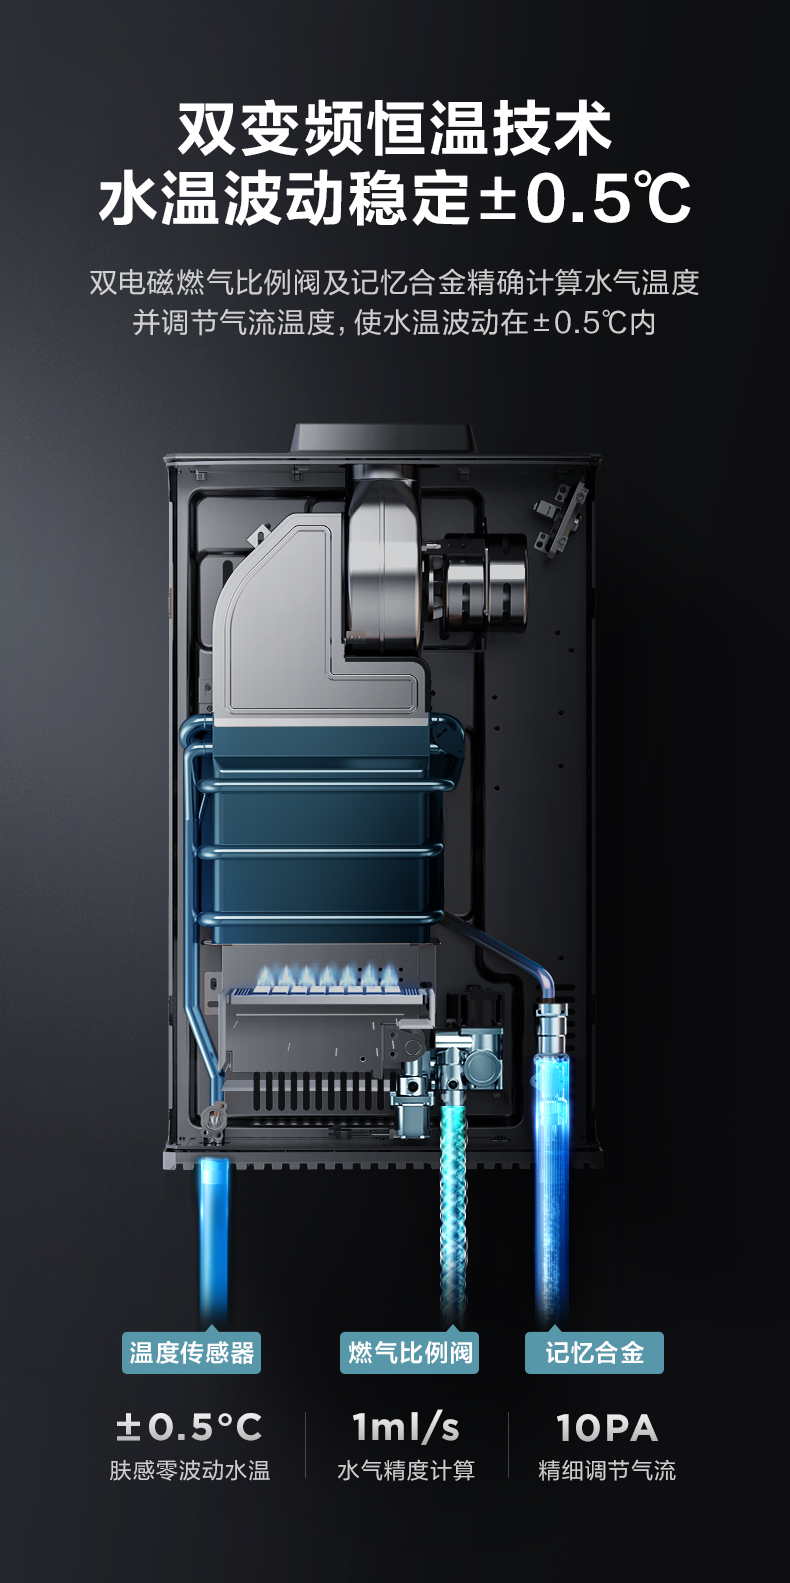 Máy nước nóng khí gas tự nhiên Midea gia dụng chính thức nhiệt độ không đổi hàng mạnh tần số biến đổi tiết kiệm năng lượng tức thì TC5 16 lít giá bình nước nóng năng lượng mặt trời các hãng máy nước nóng năng lượng mặt trời